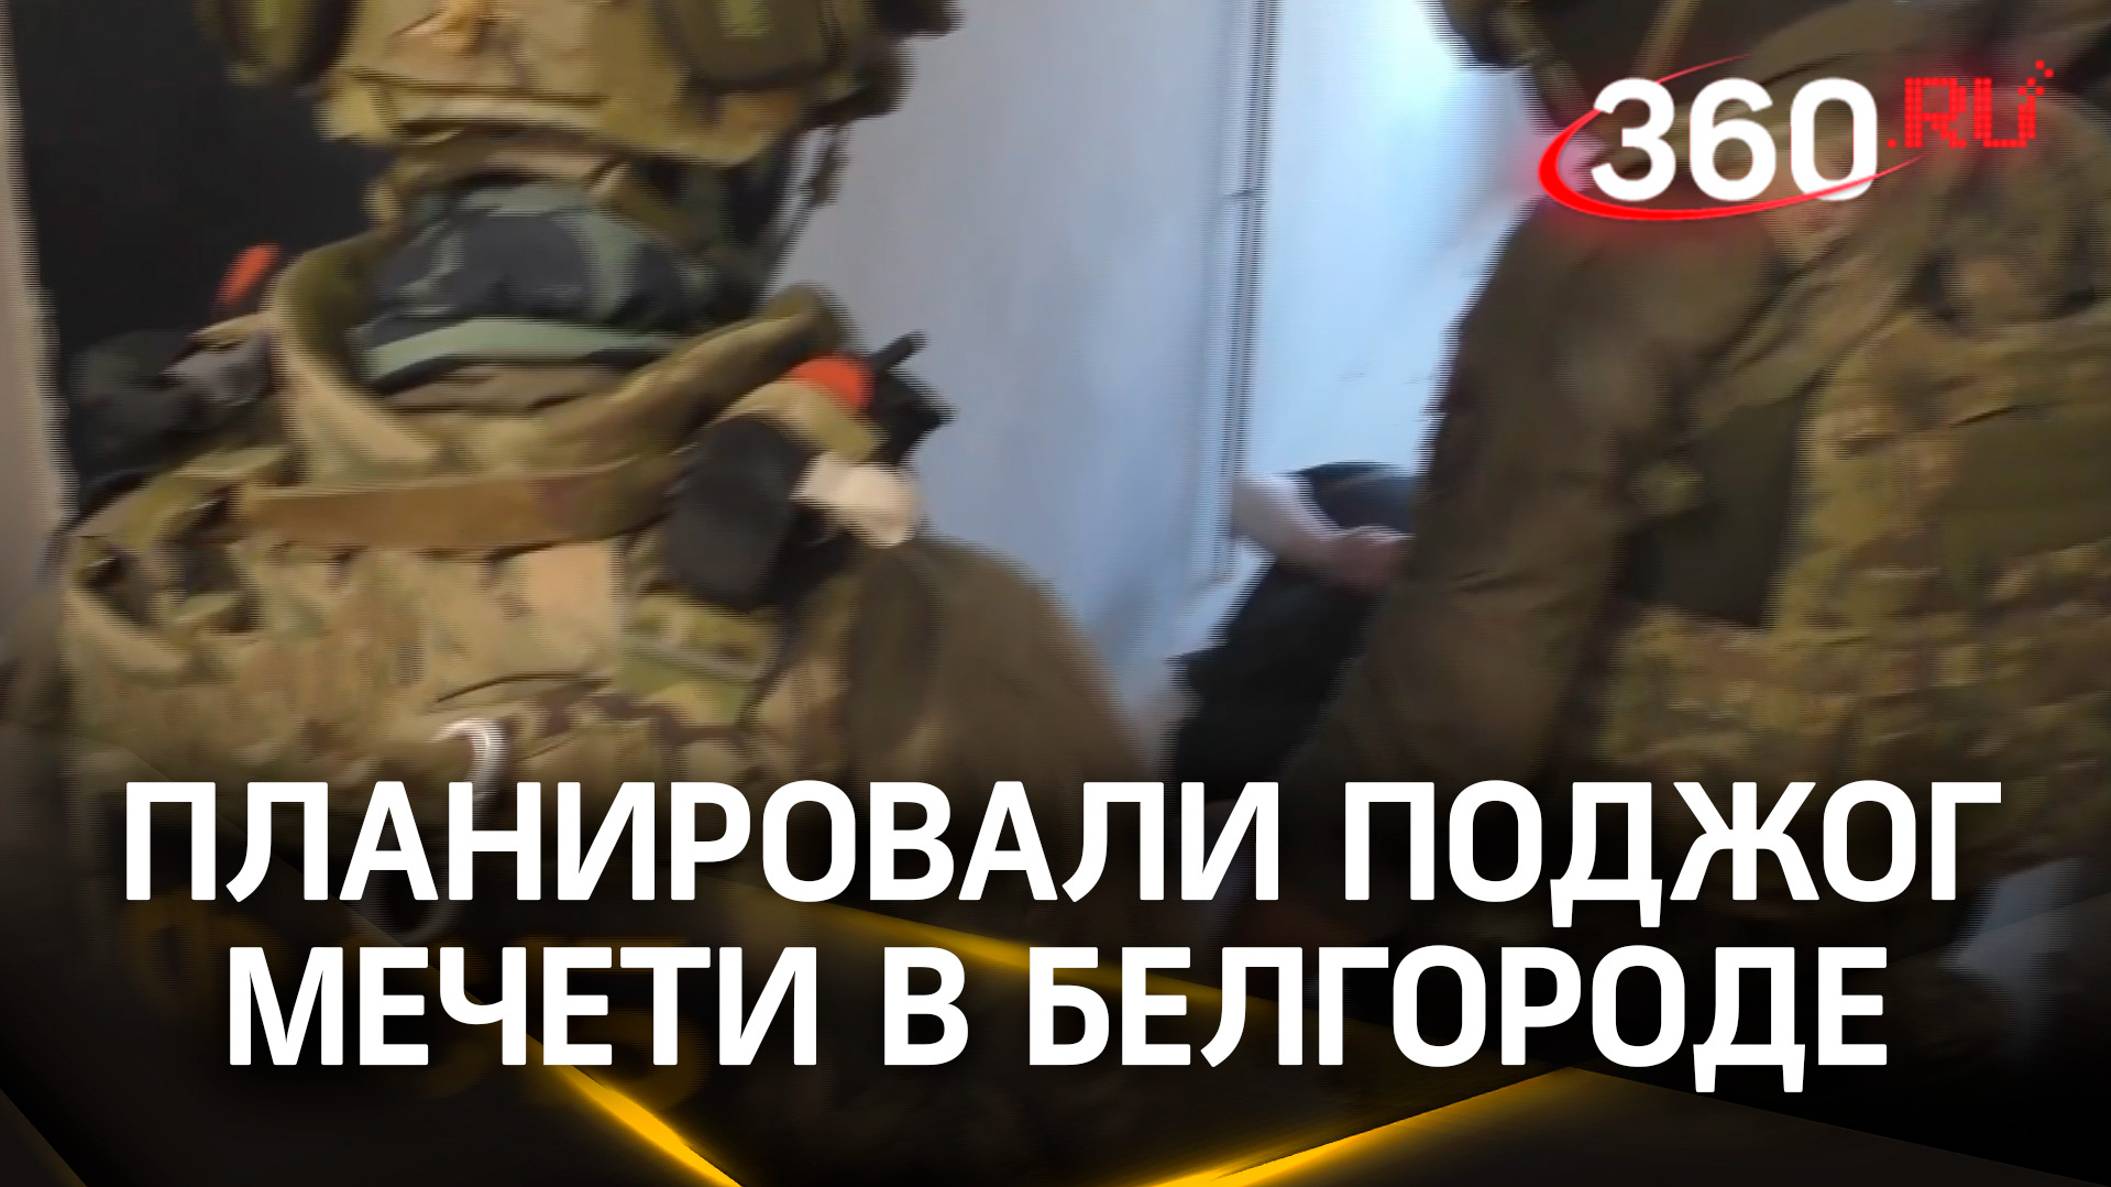 Желающих поджечь мечеть в Белгороде задержала ФСБ - их завербовали спецслужбы Украины